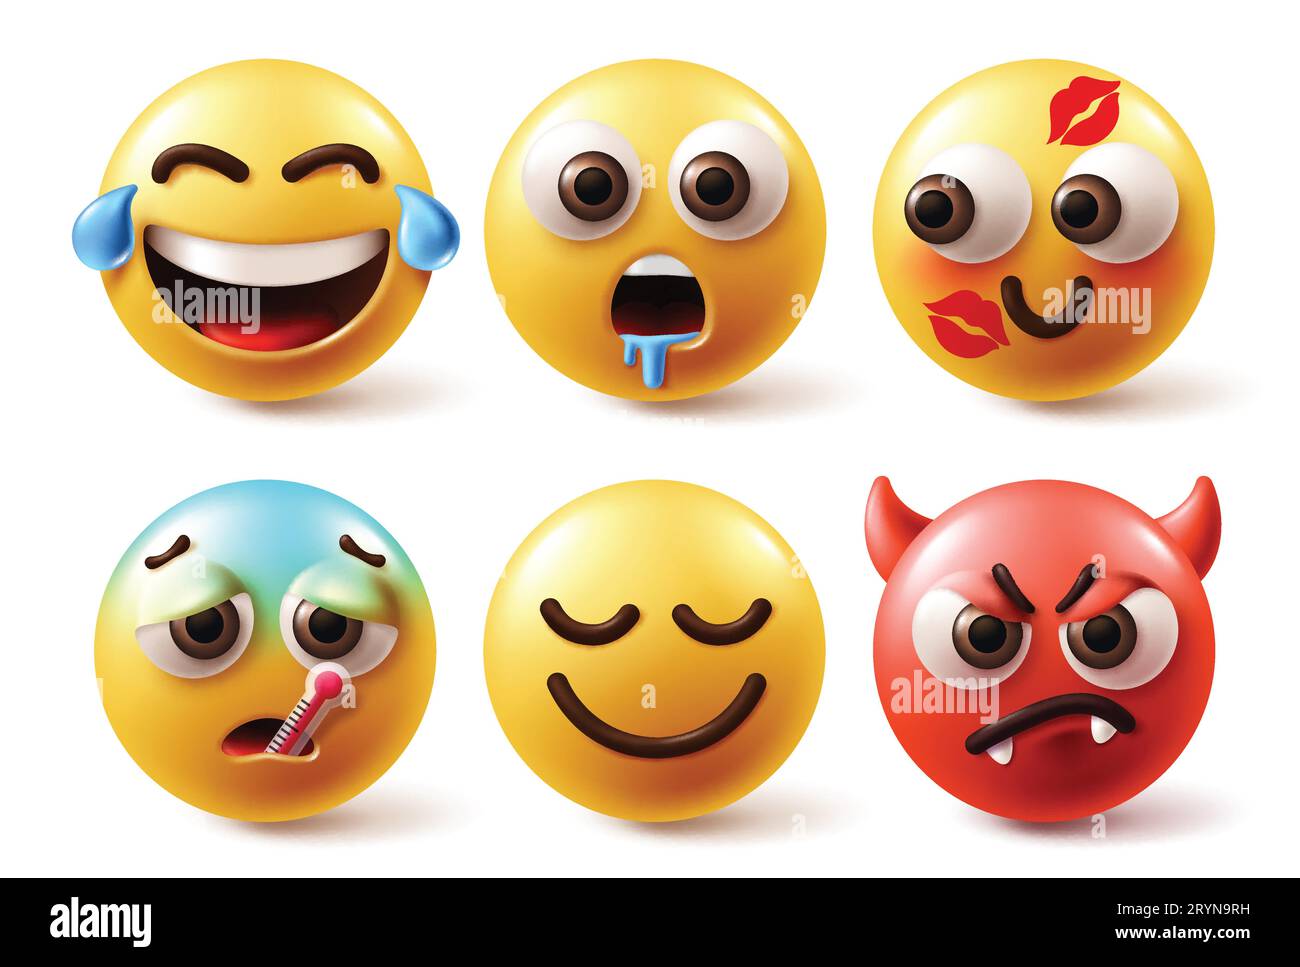 Vecteur d'émoticônes emojis. Émoticônes emoji personnages en pleurant, affamé, ennuyé, embrassé, malade et en colère expression faciale en fond blanc. Vecteur Illustration de Vecteur